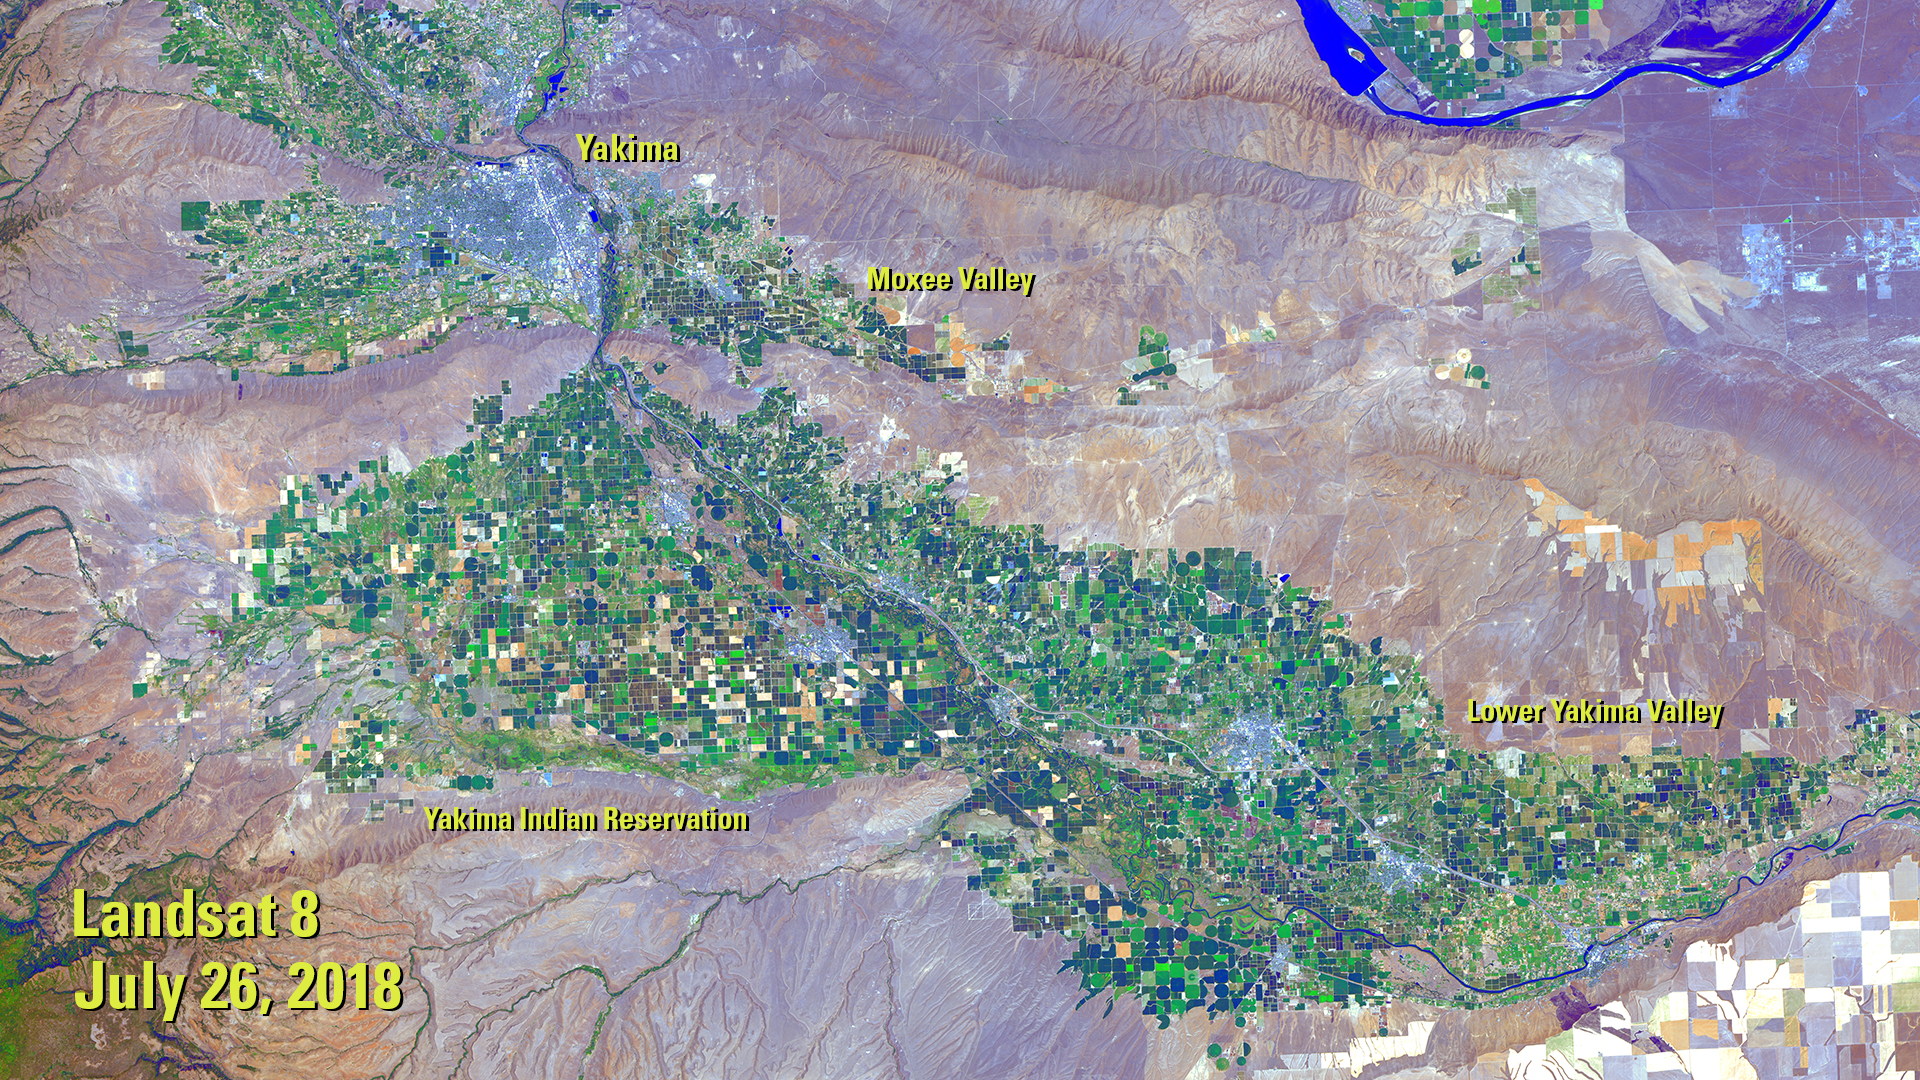 Landsat image of Yakima, Washington region